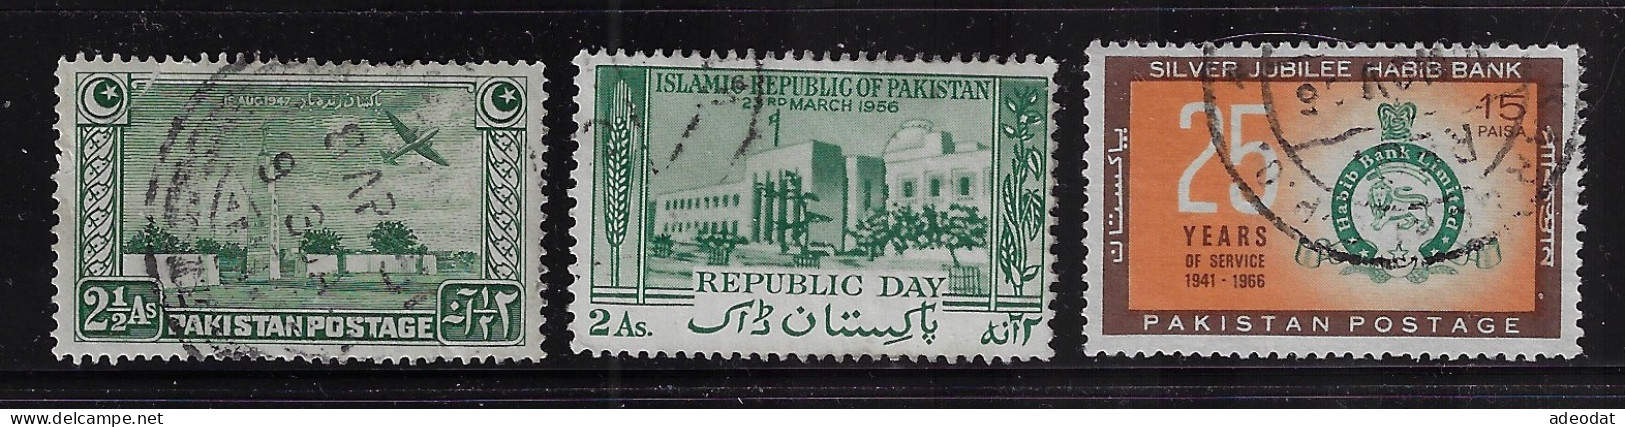 PAKISTAN  1948,56,66  SCOTT #21,82,224   USED  $0.80 - Pakistan